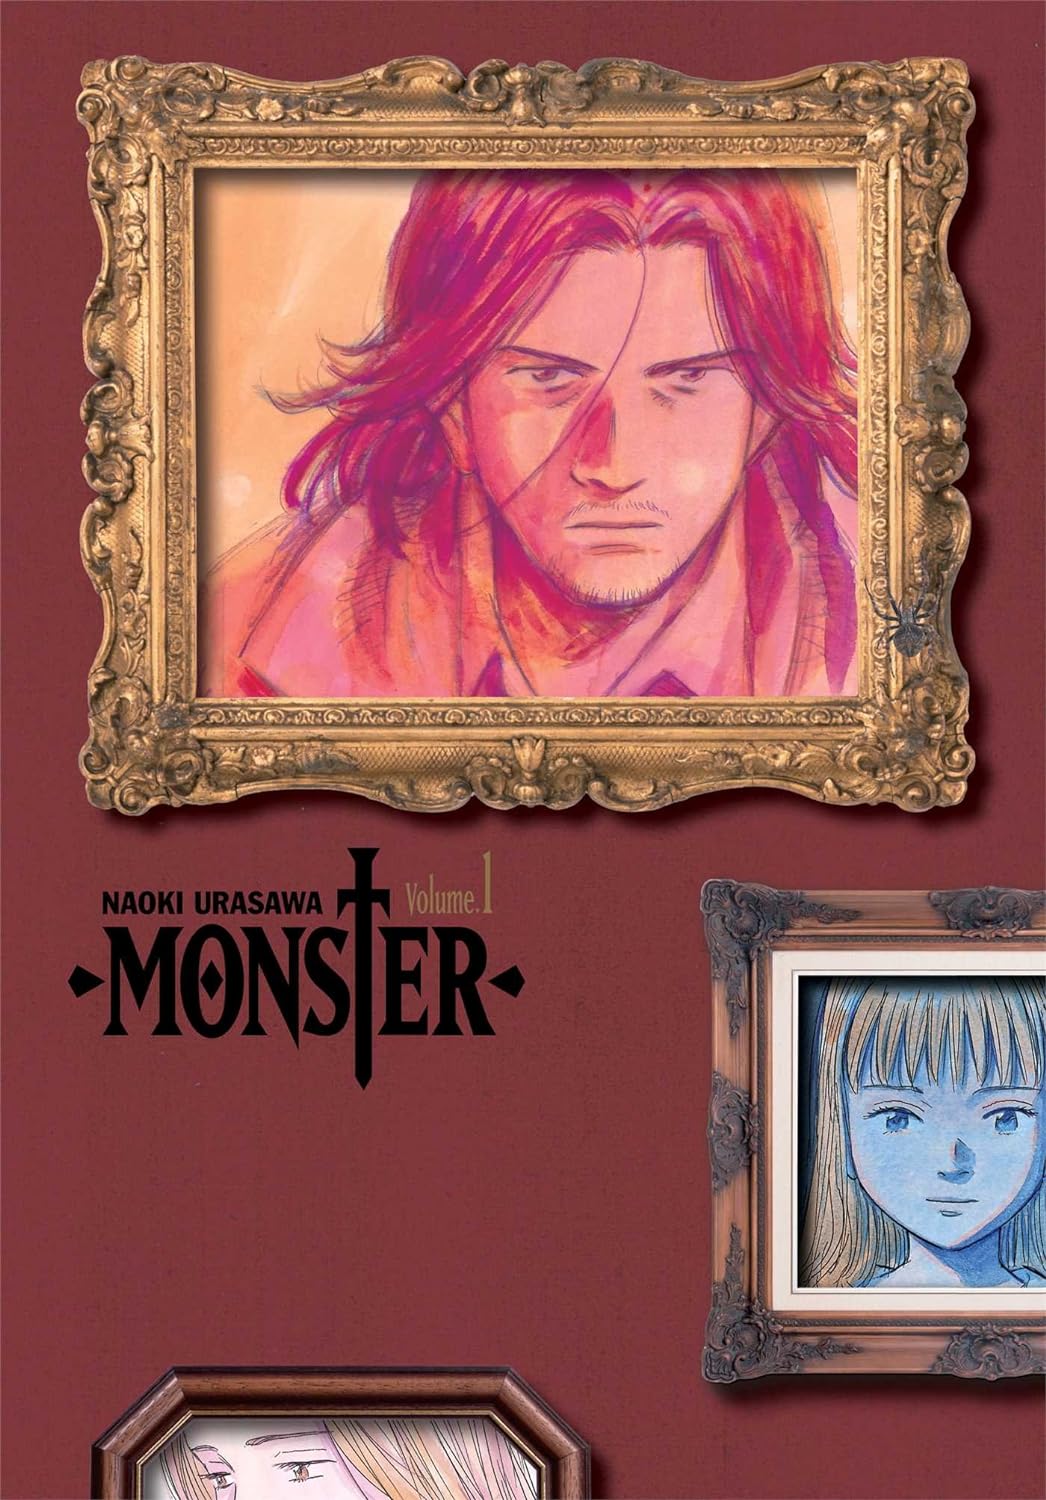 Monster by Naoki Urasawa Vol 1 - English (Paperback)